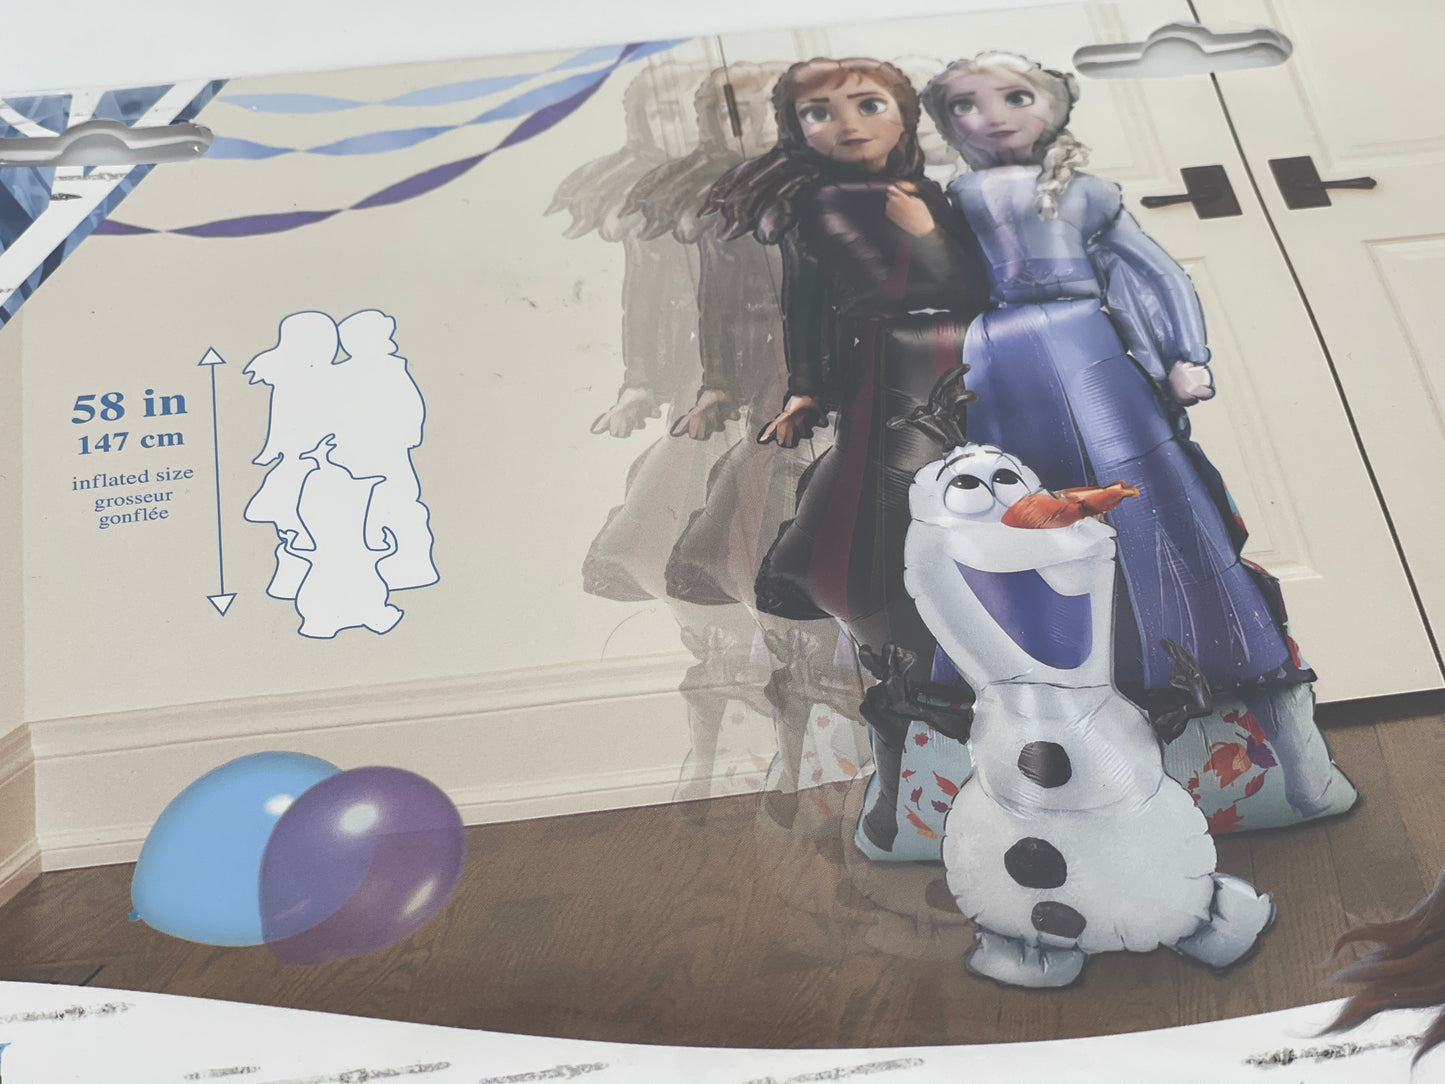 Folienballon "Frozen II" Olaf, Elsa, Anna Helium Ballon Airwalker (147 cm x 68 cm)